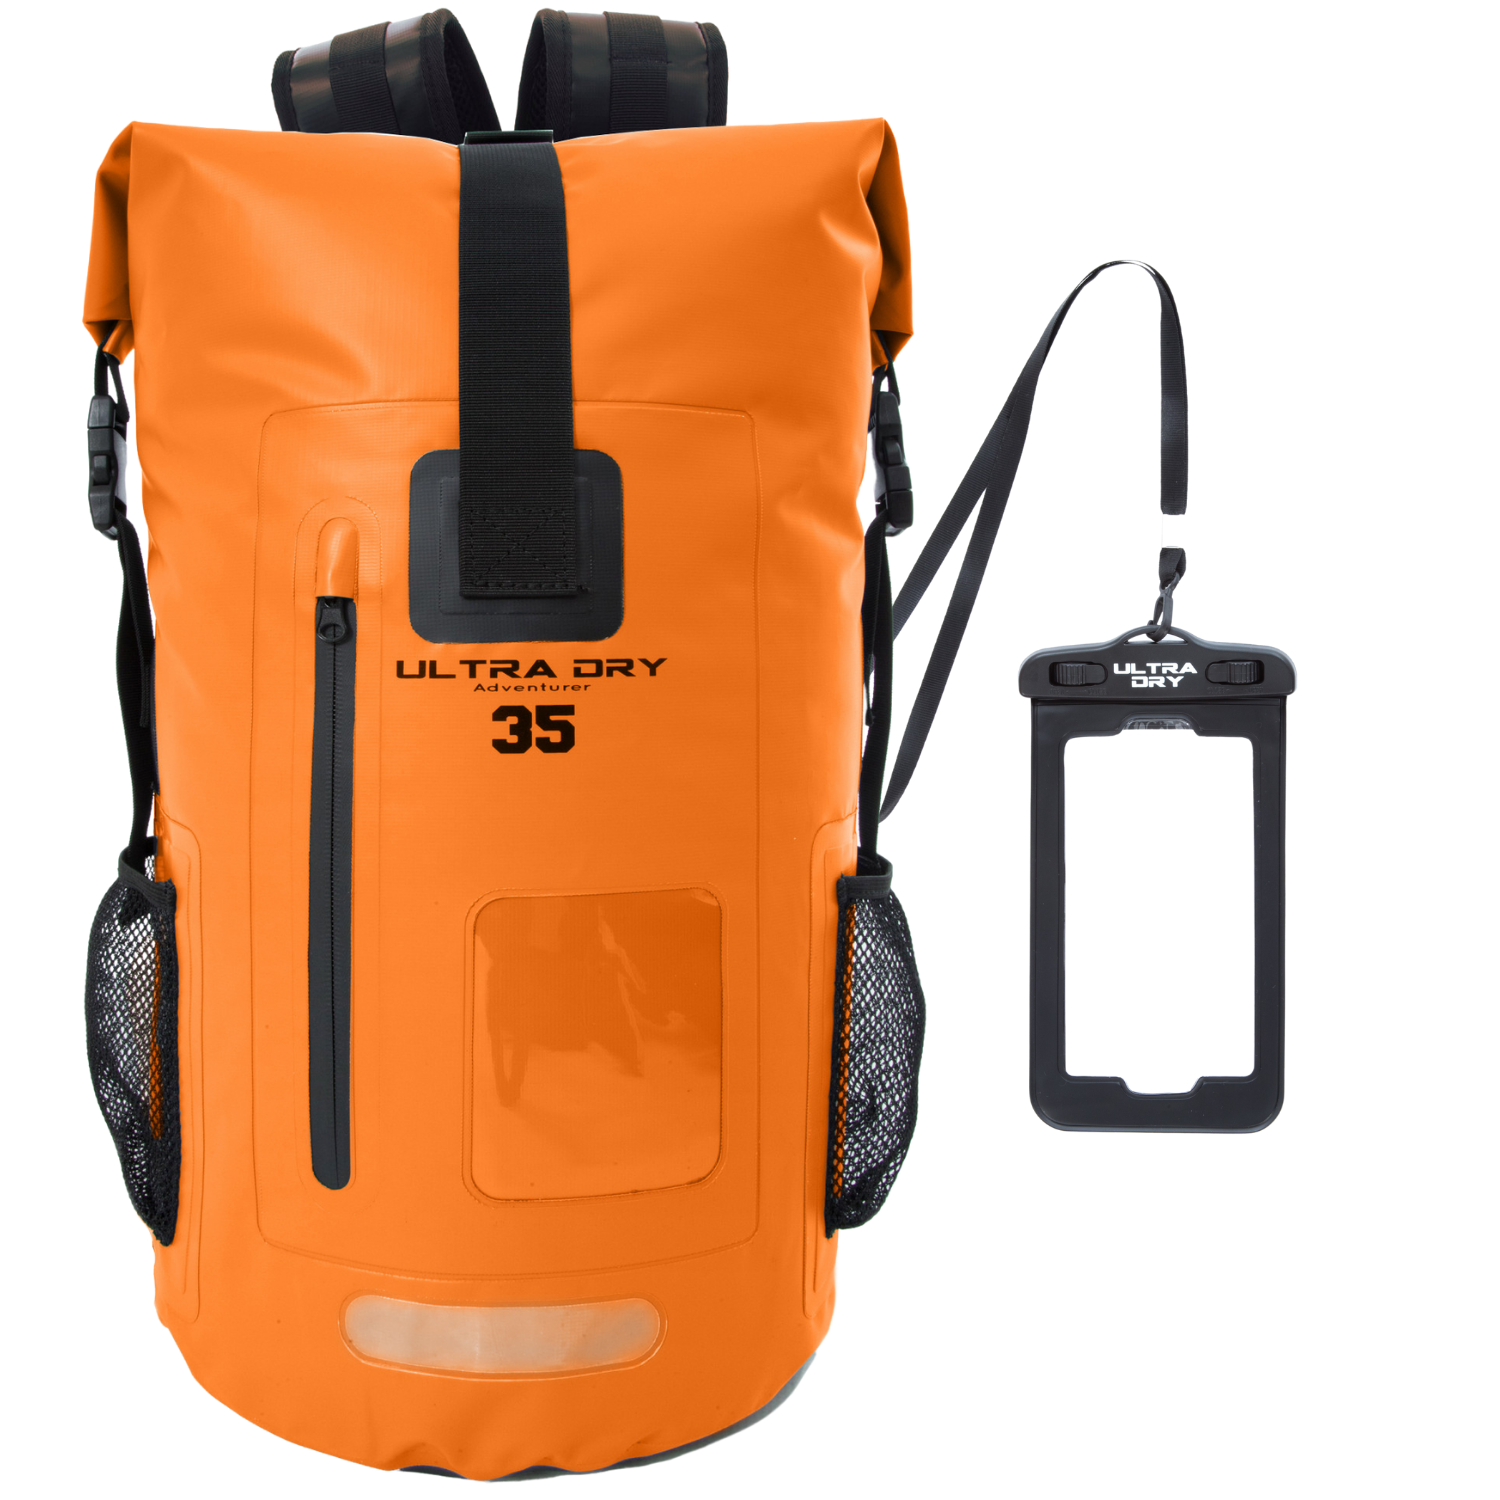 Recepción mareado preposición Dry bags backpacks, Waterproof 35 Litre - Ultra Dry Bags